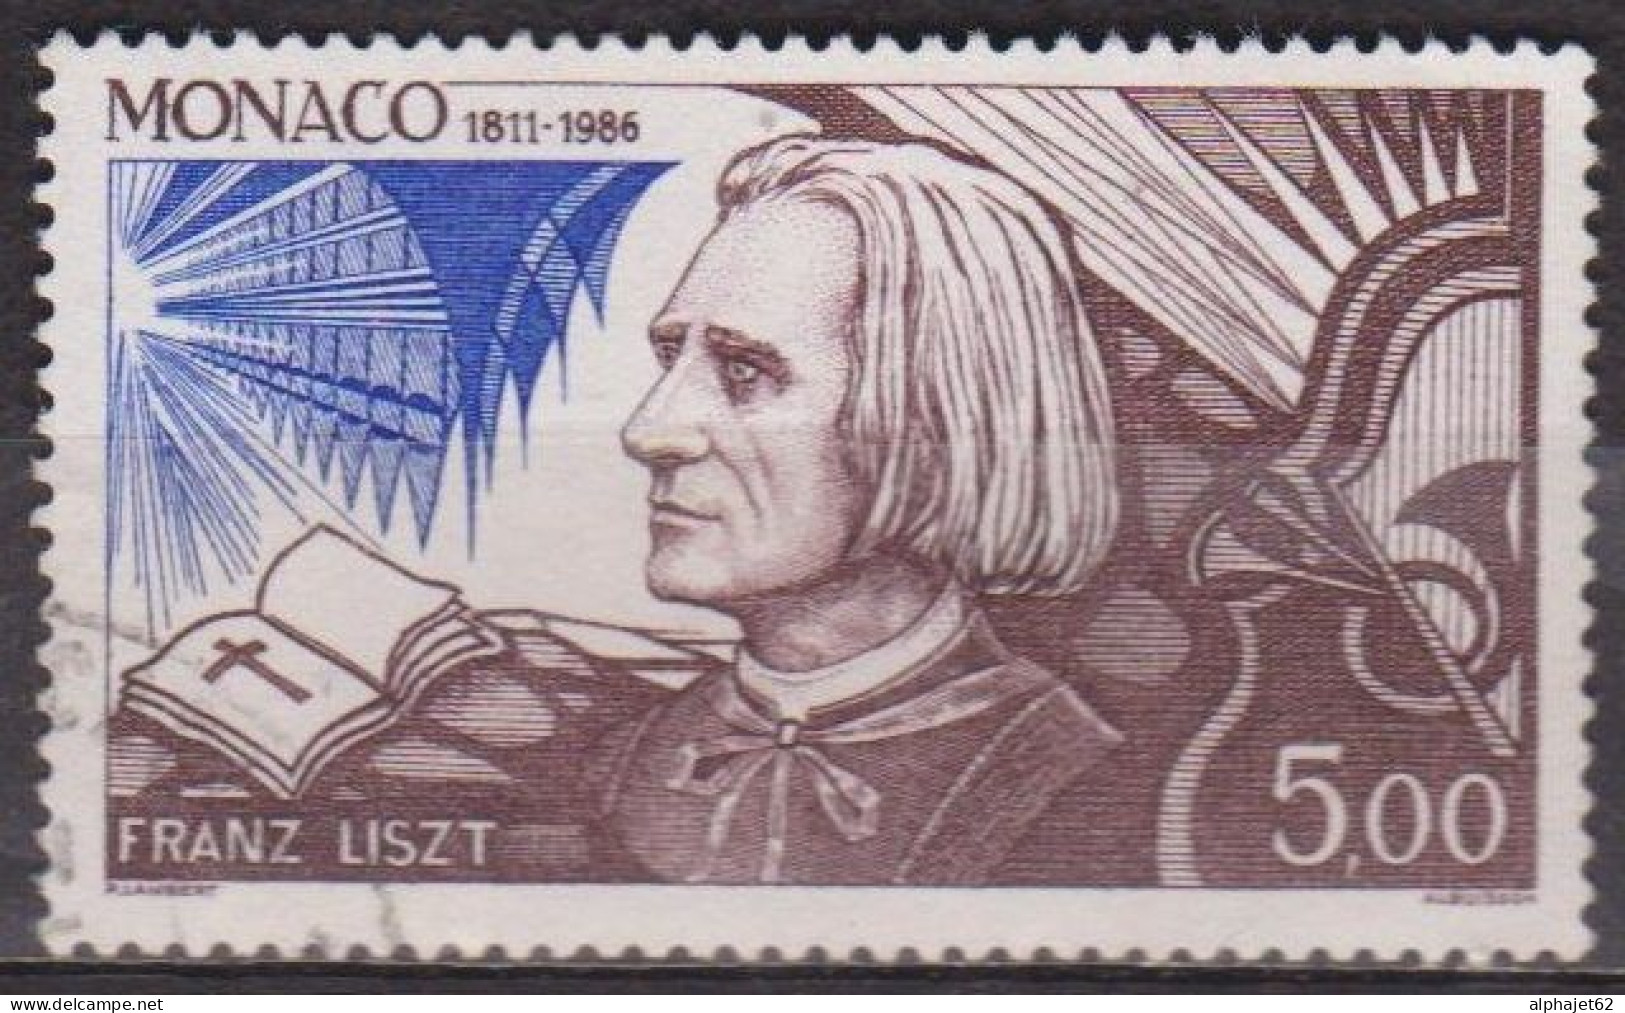 Musque - MONACO - Franz Liszt, Compositeur - N° 1548 - 1986 - Oblitérés